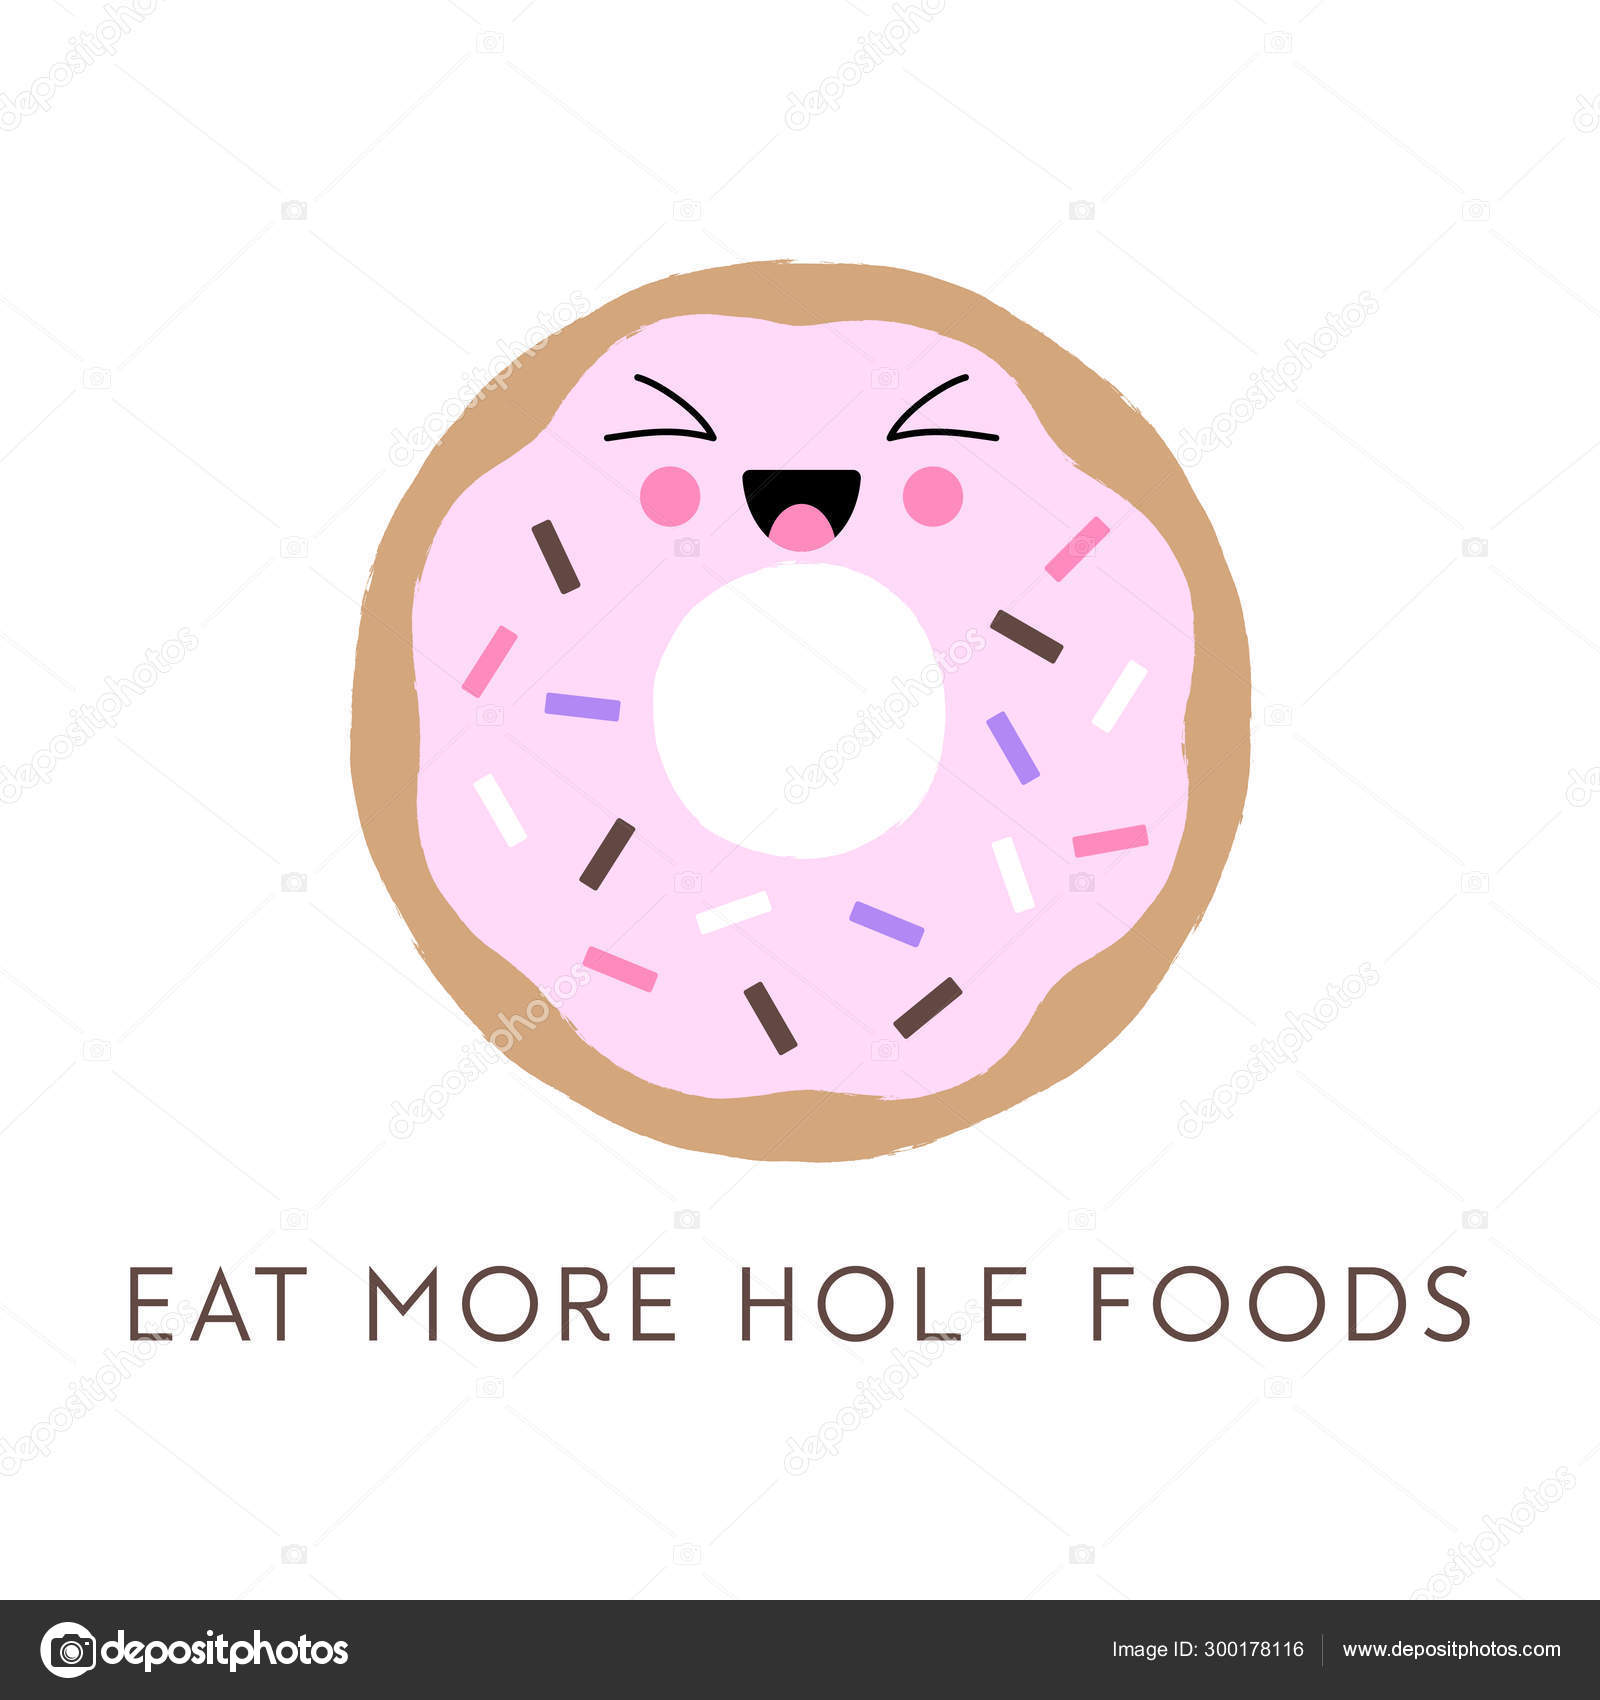 https://st4.depositphotos.com/15956472/30017/v/1600/depositphotos_300178116-stock-illustration-vector-illustration-kawaii-donut-cute.jpg